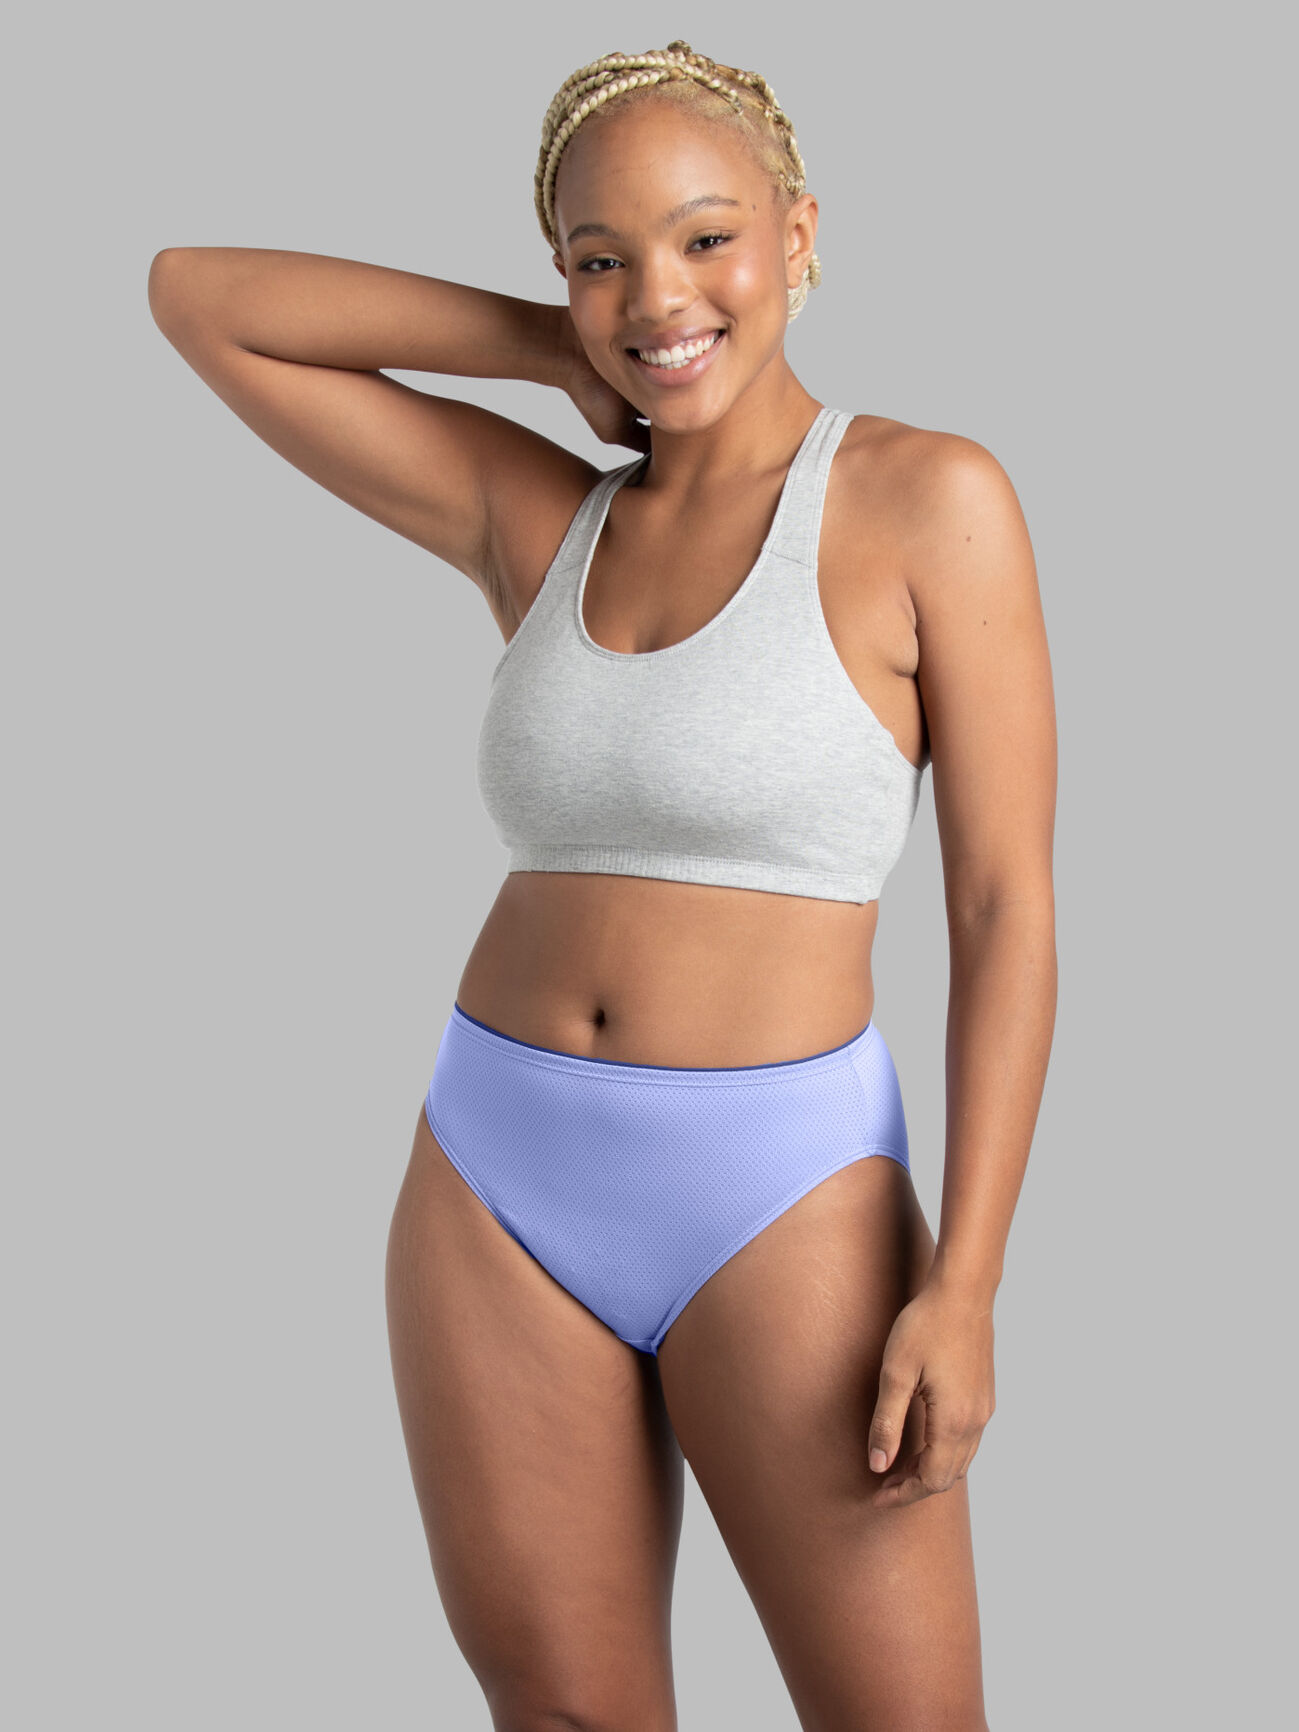 Women's Breathable Micro-Mesh Hi-Cut Panty, Assorted 6+2 Bonus Pack